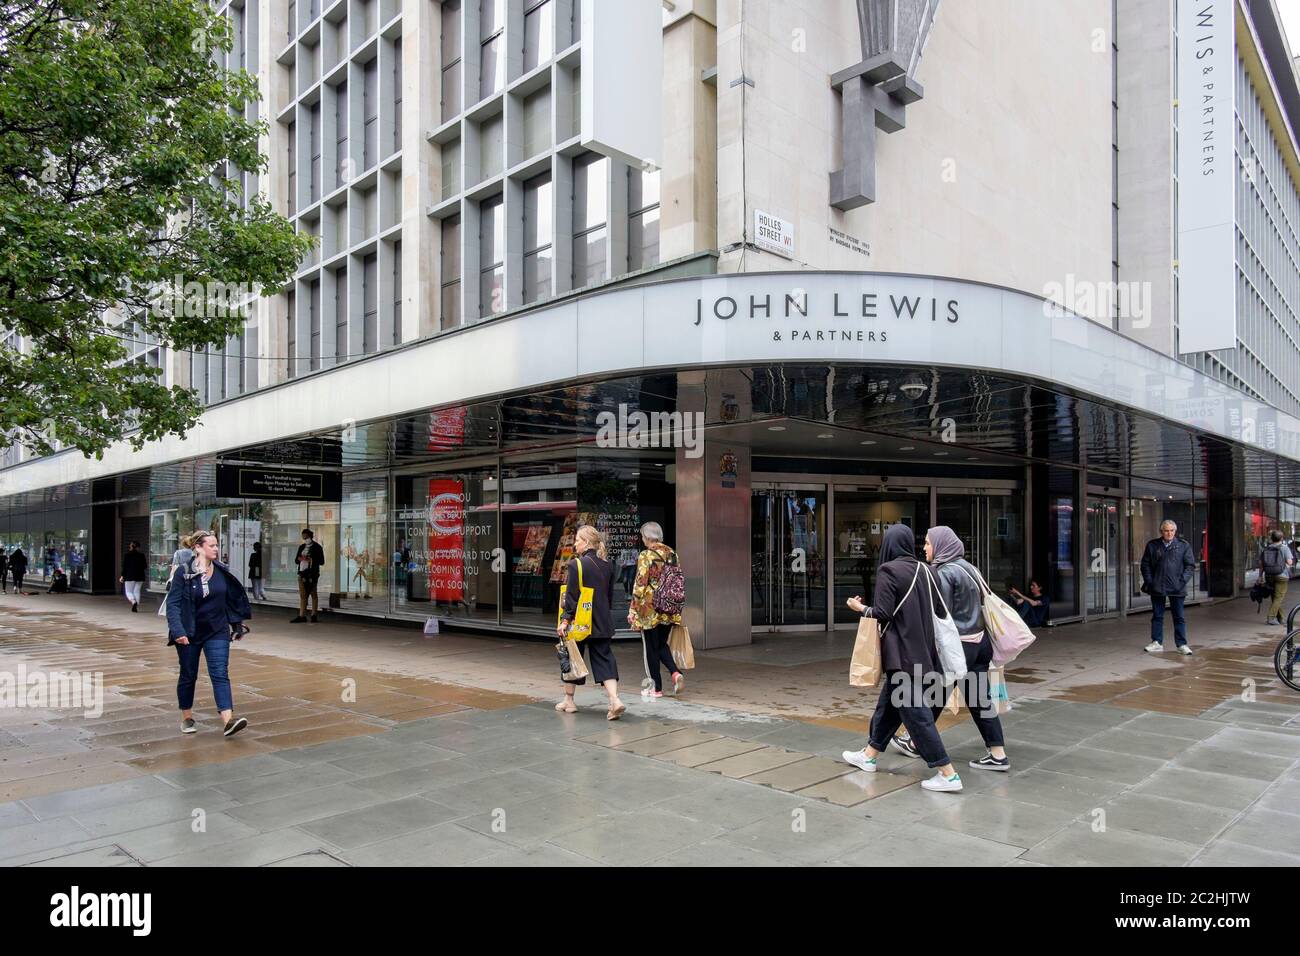 17 juin 2020. Malgré l'assouplissement par le gouvernement des mesures de confinement de Covid-19 permettant aux points de vente non essentiels en Angleterre de rouvrir le grand magasin John Lewis d'Oxford Street reste fermé. Londres, Royaume-Uni. Banque D'Images